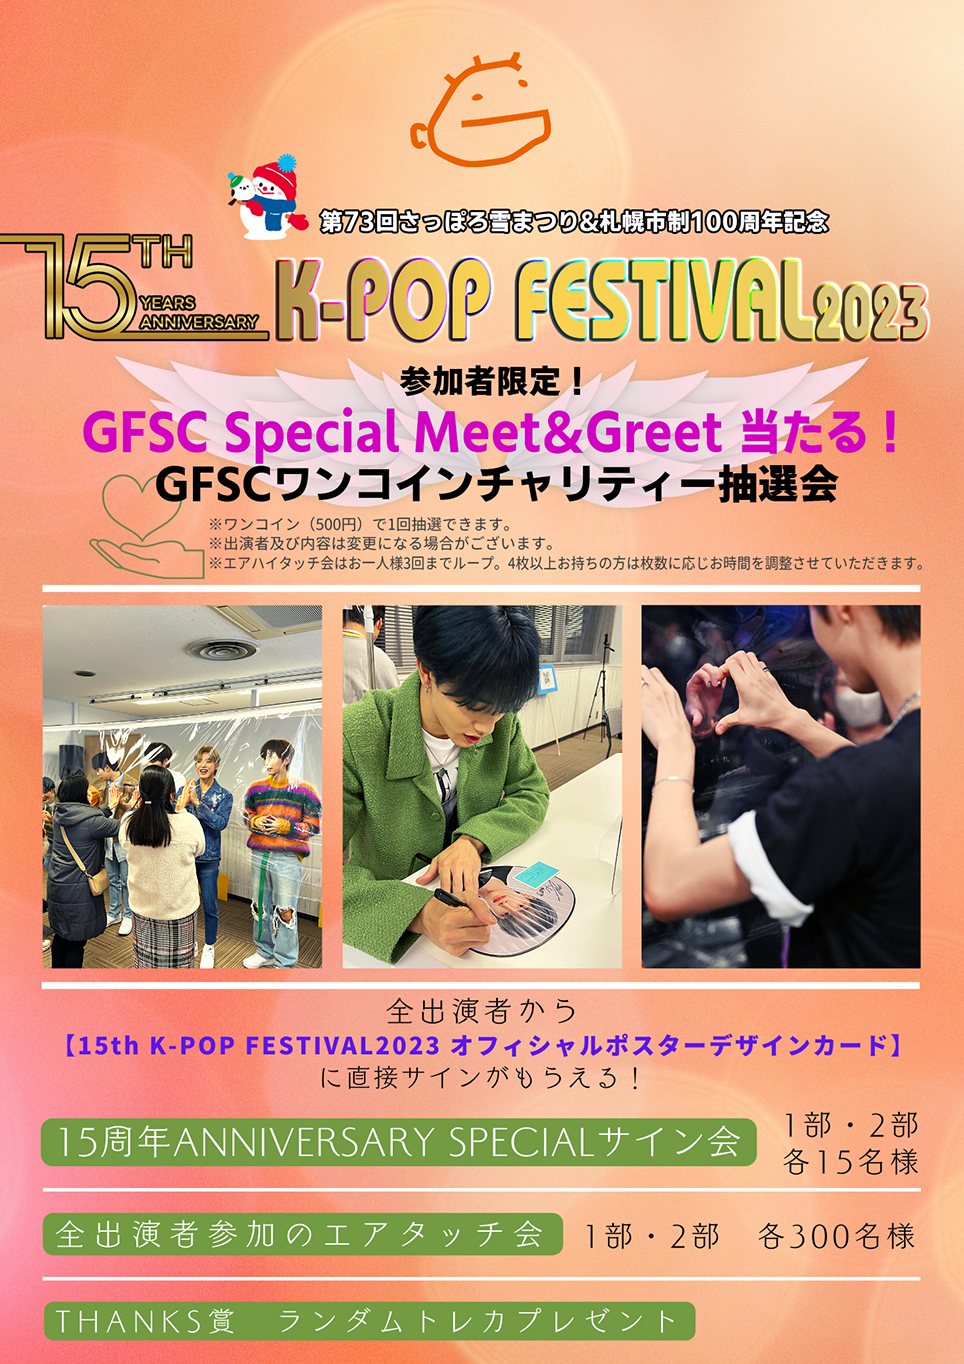 GFSC Special Meet＆Greet GFSCワンコインチャリティー抽選会